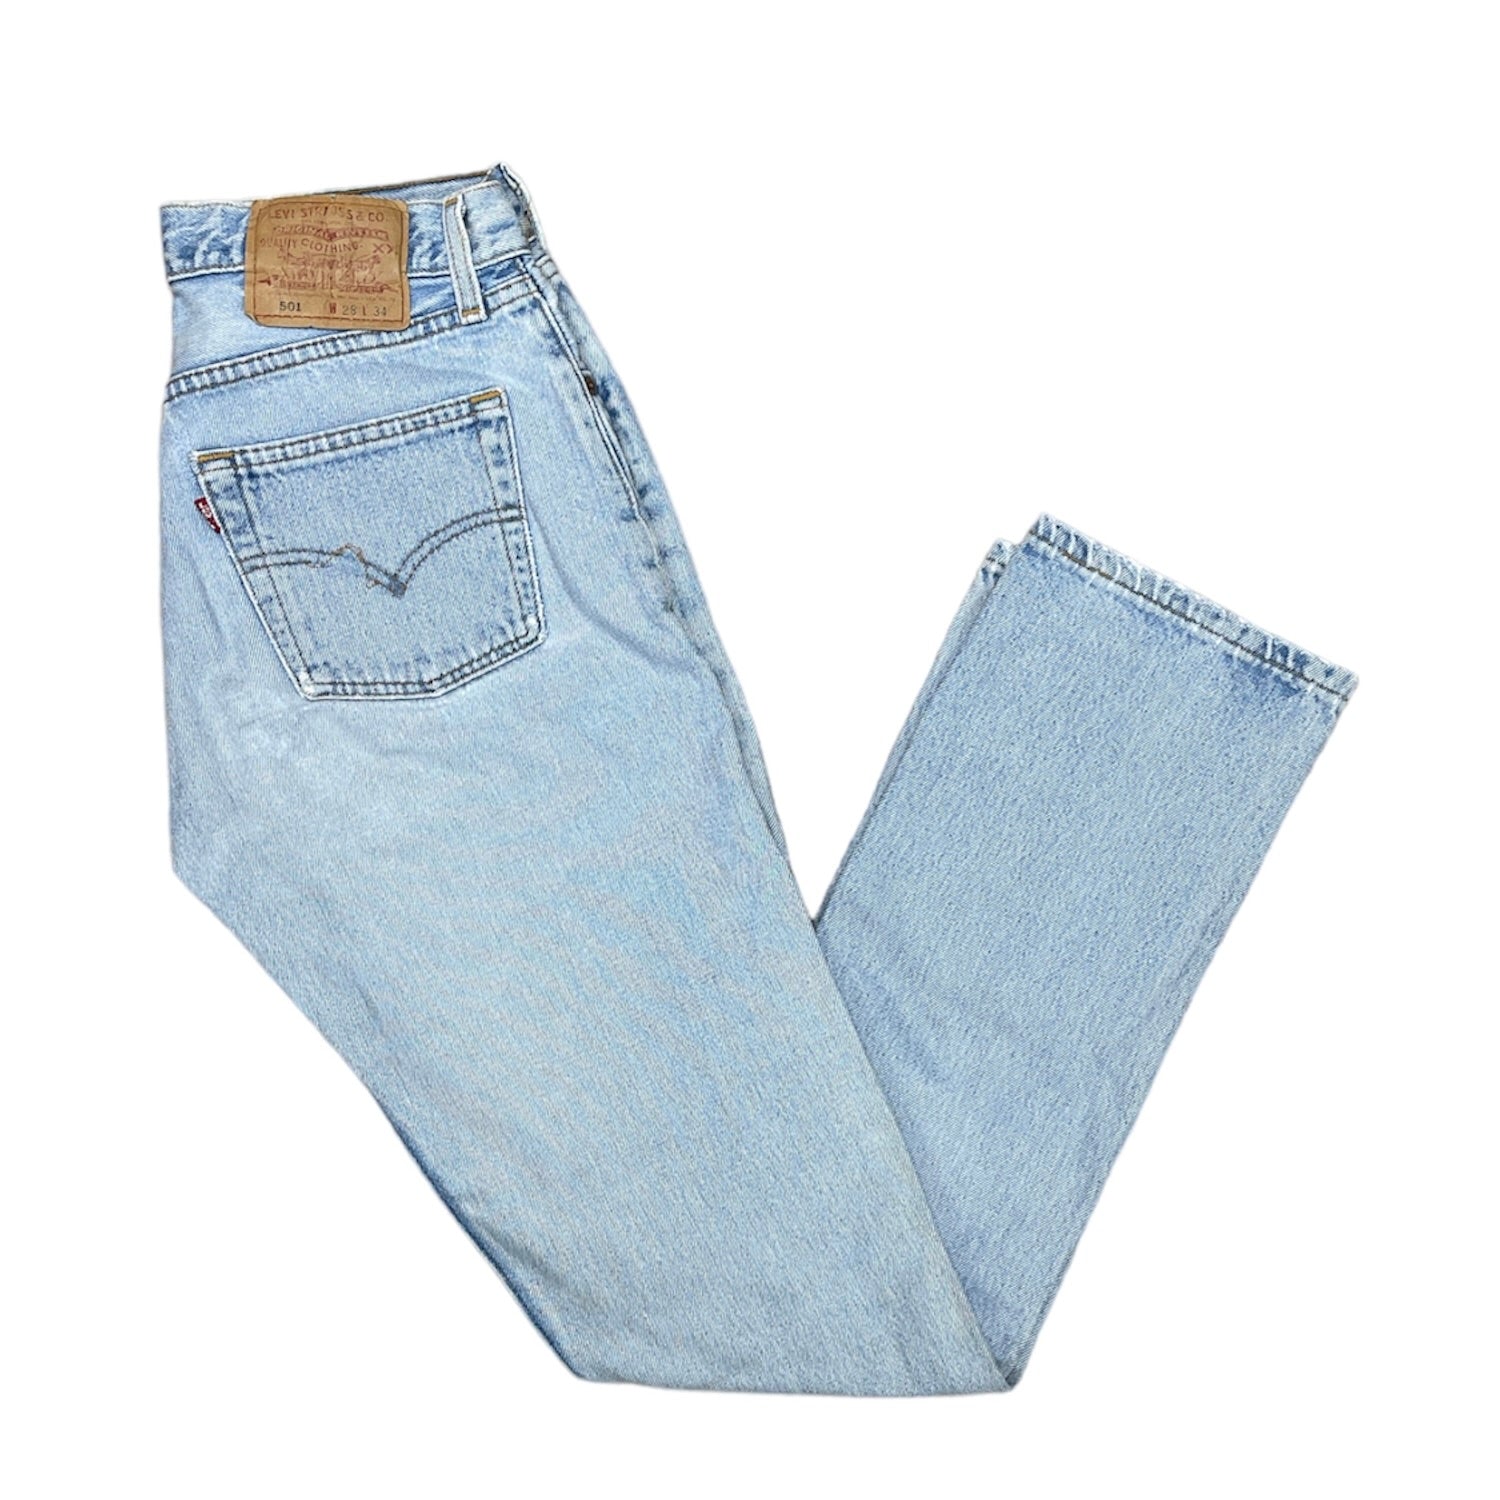 Vintage Levis 501 Light Blue Jeans (W28/34)